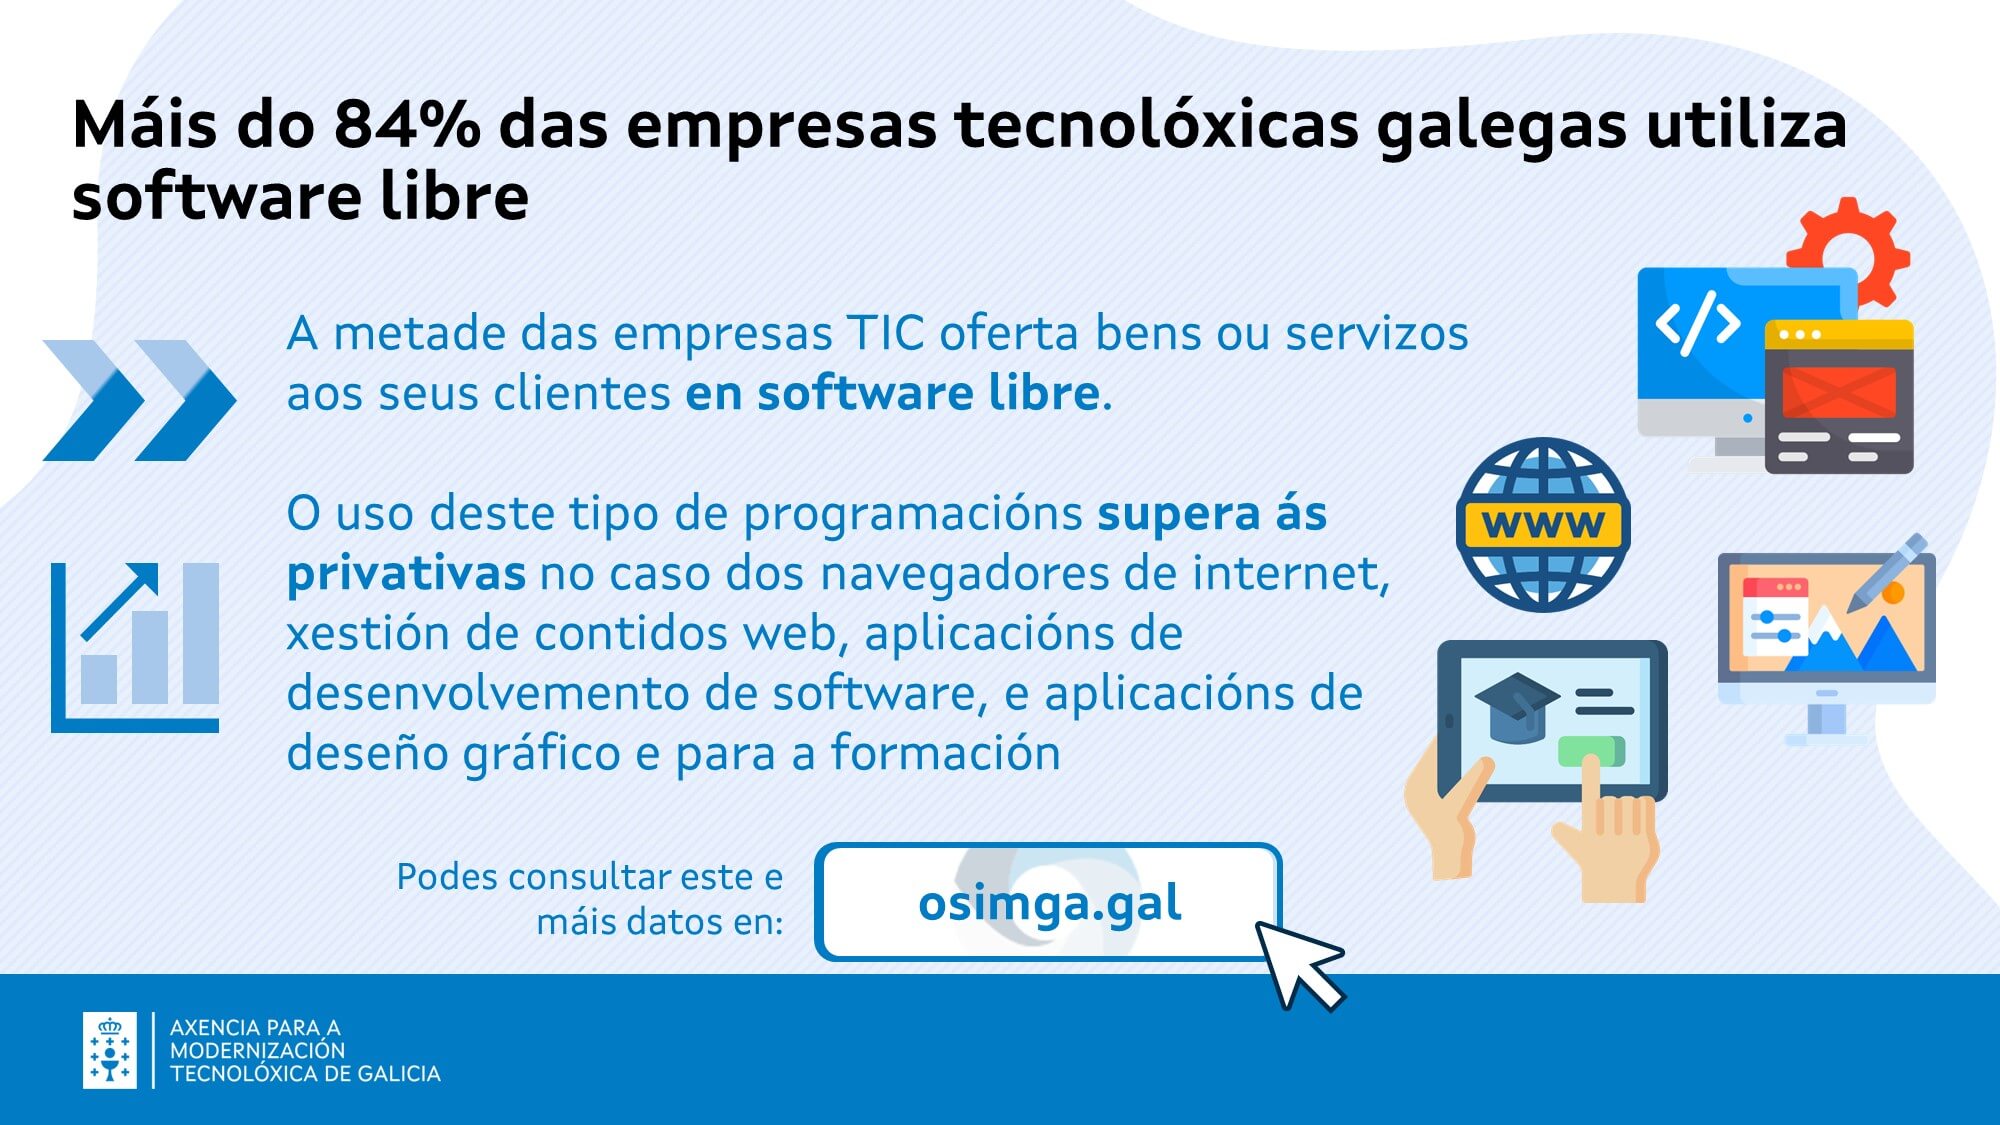 Software libre nas empresas TIC